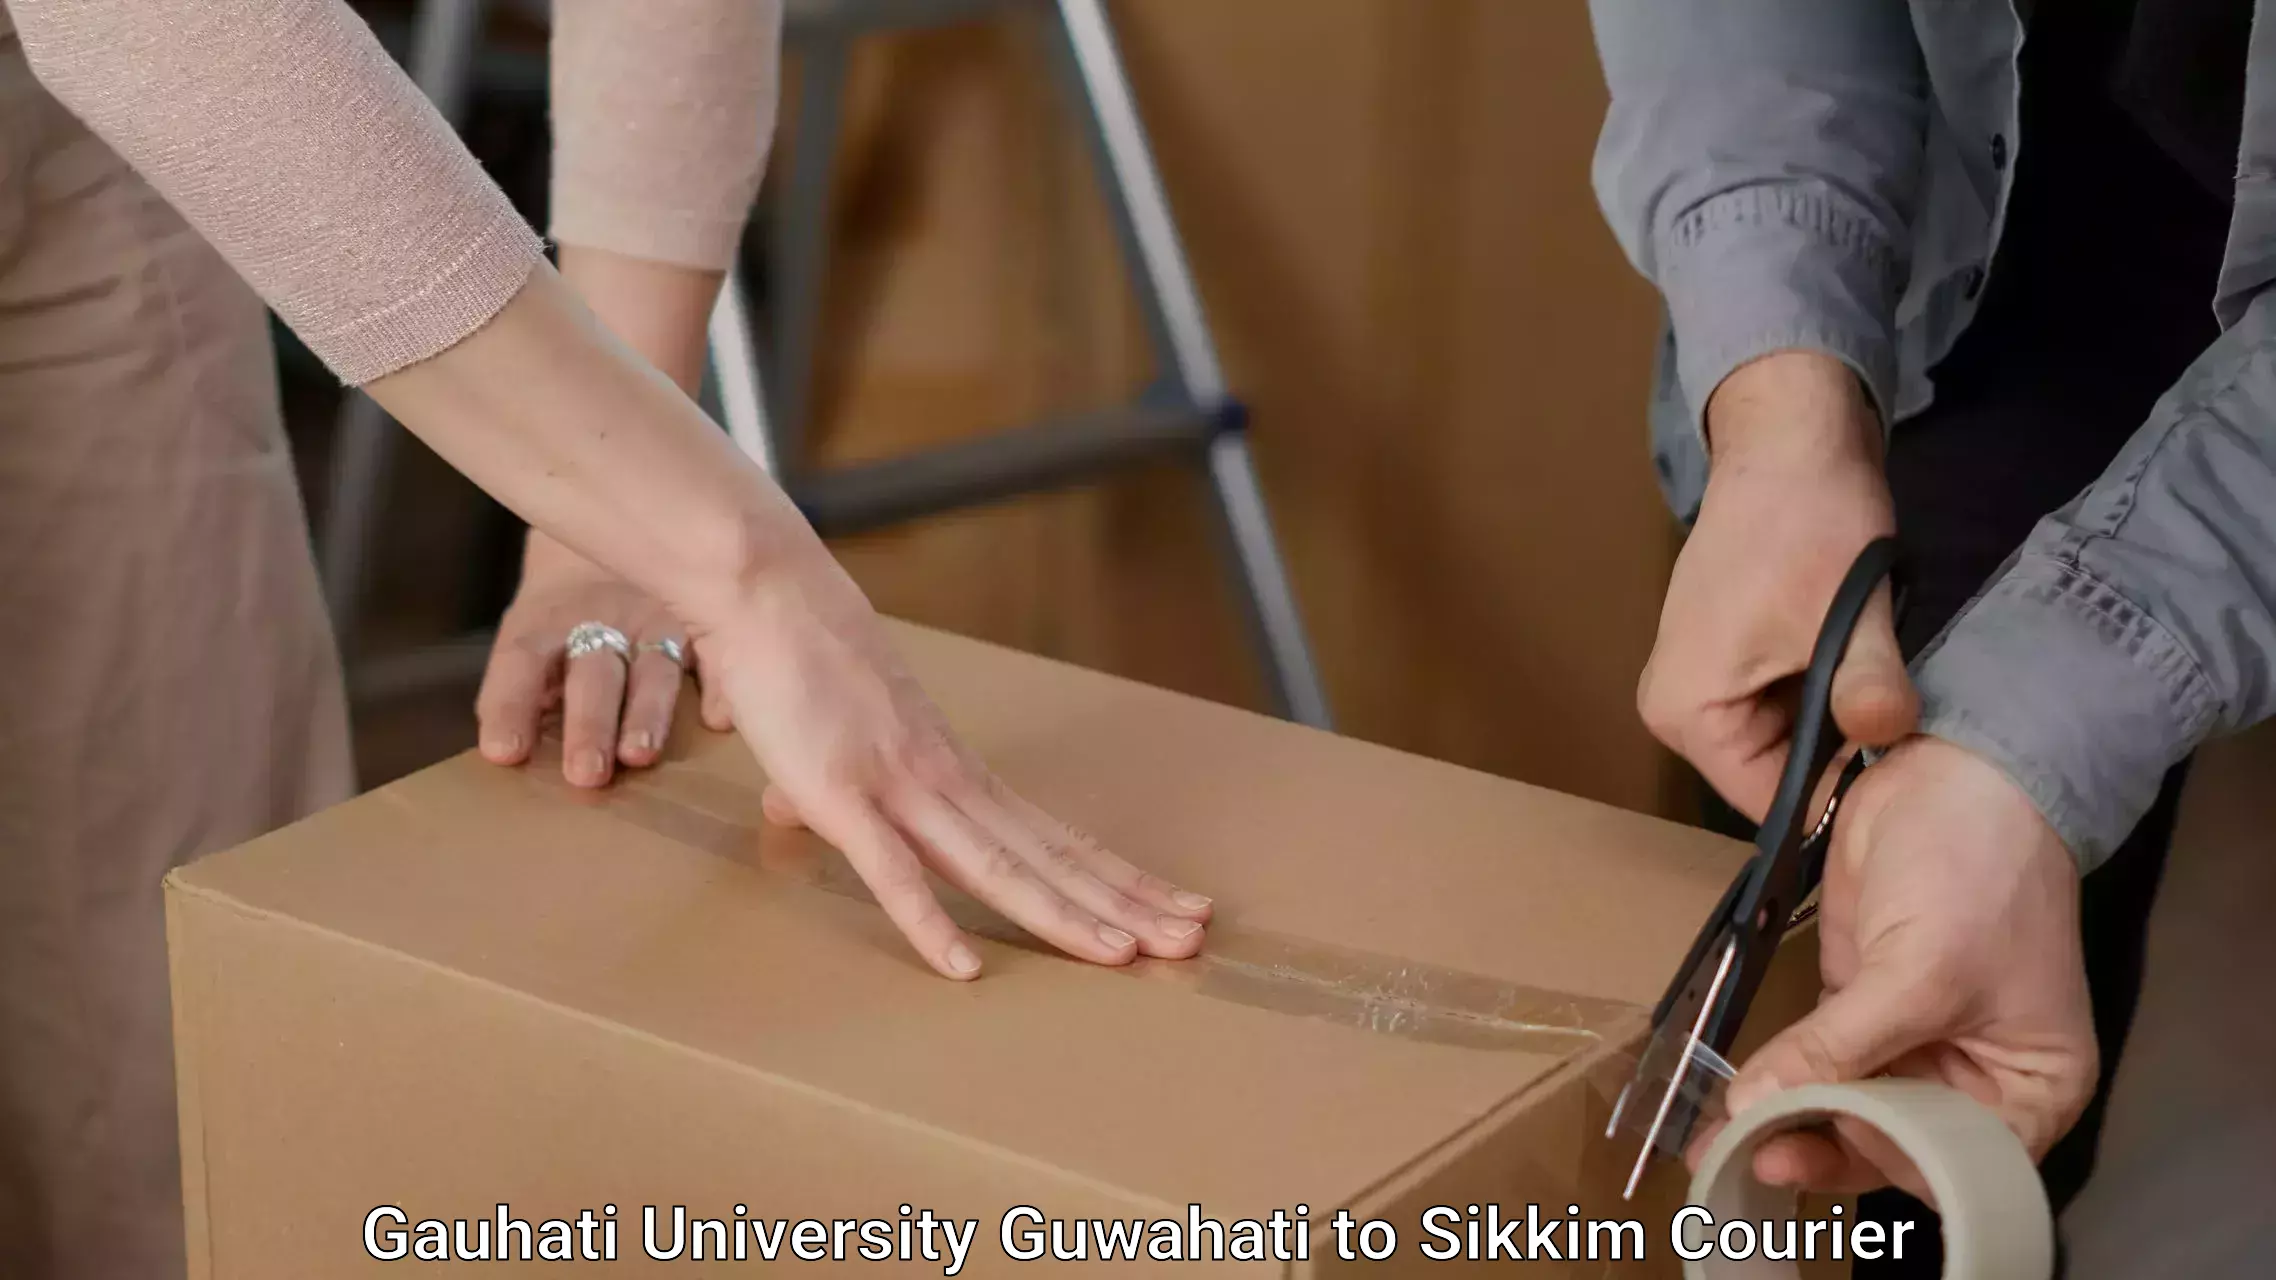 Furniture moving plans Gauhati University Guwahati to Sikkim